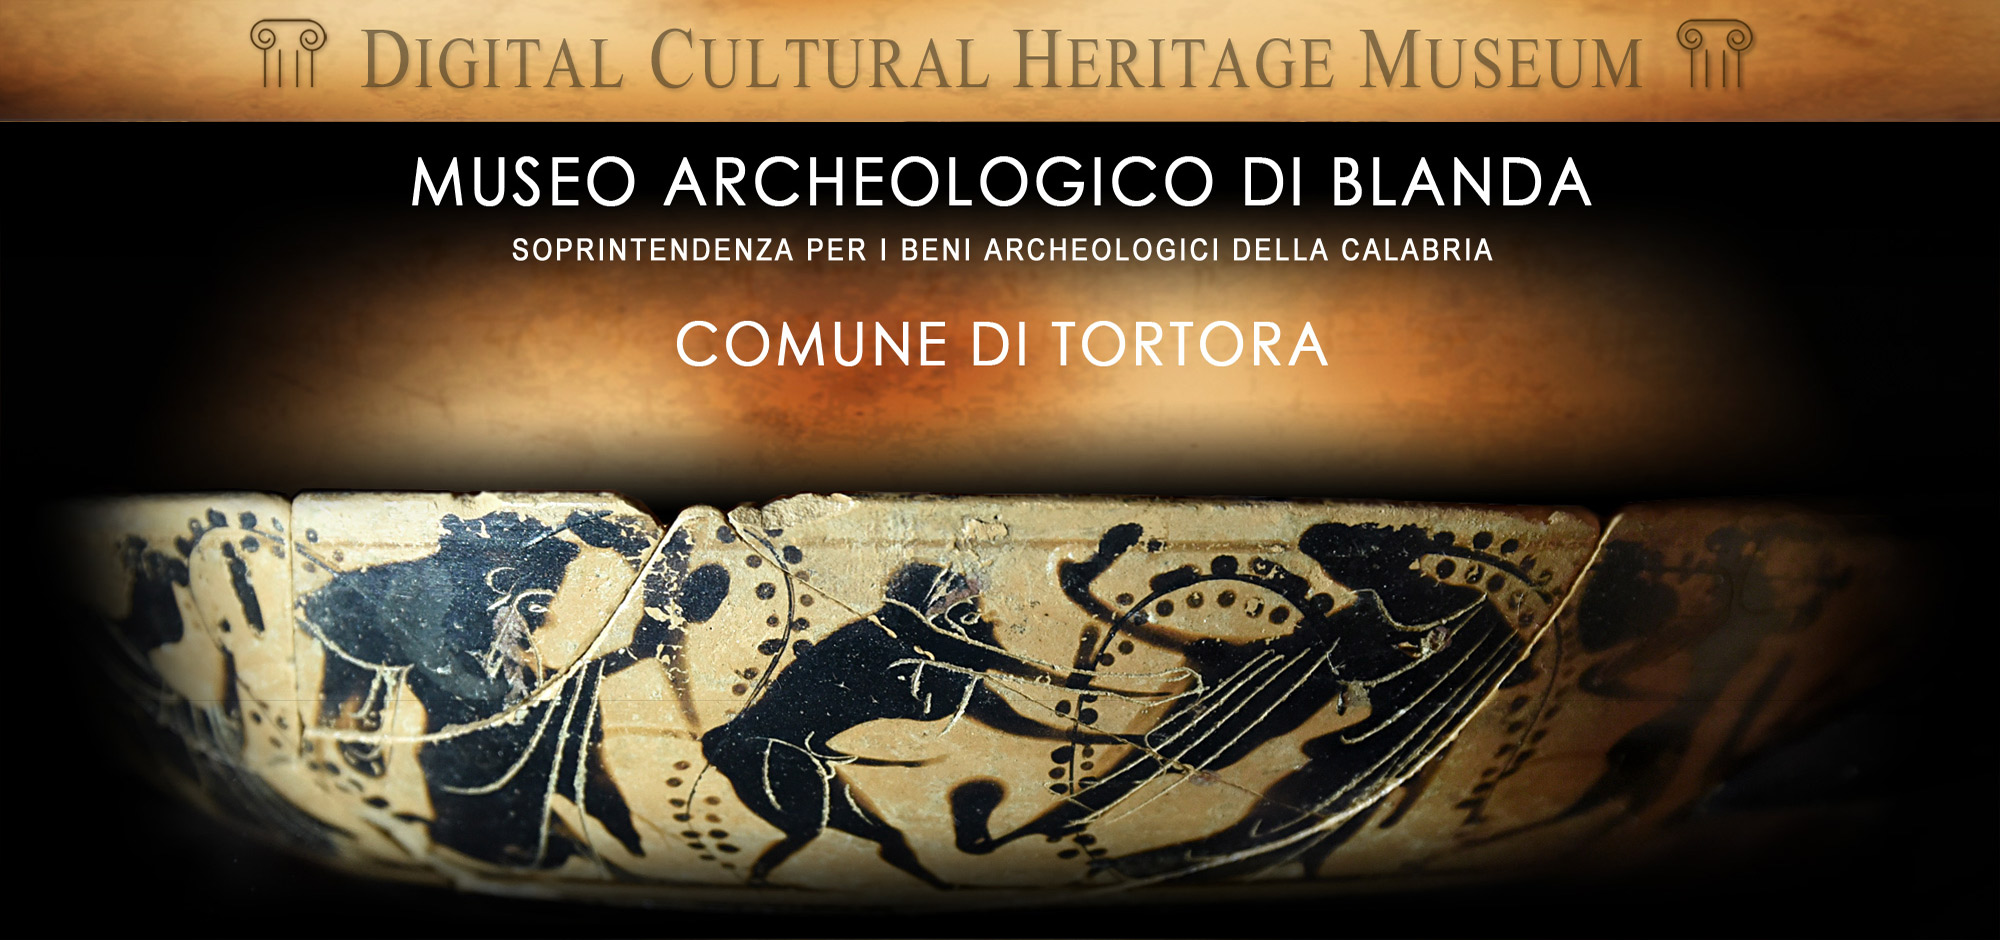 La Piattaforma del Museo Archeologico e del Parco Archeologico di Blanda, nel Comune di Tortora